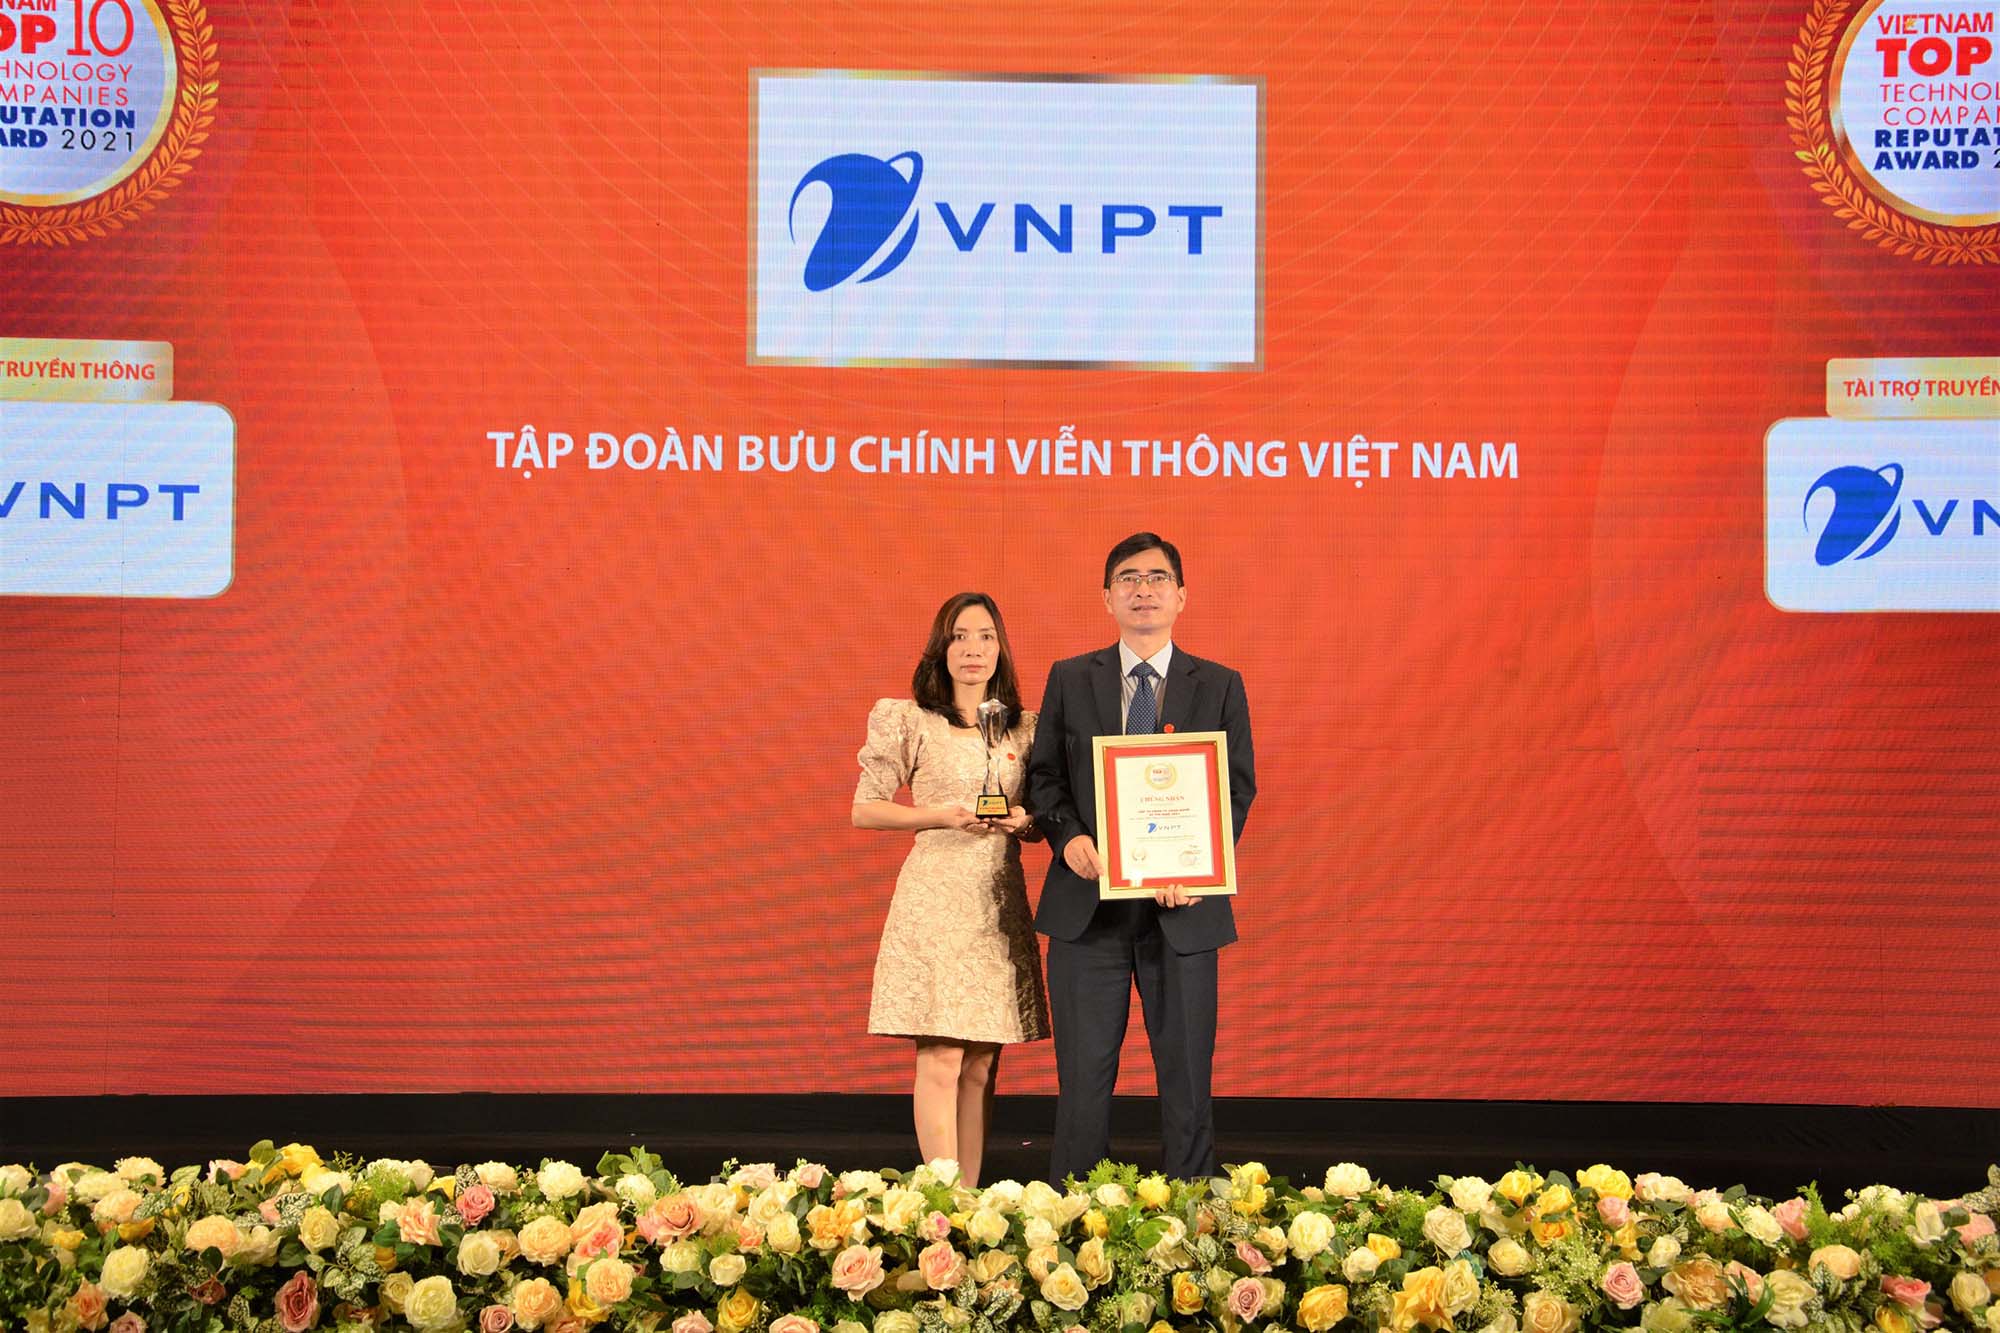 VNPT – TOP 2 công ty công nghệ uy tín nhất Việt Nam